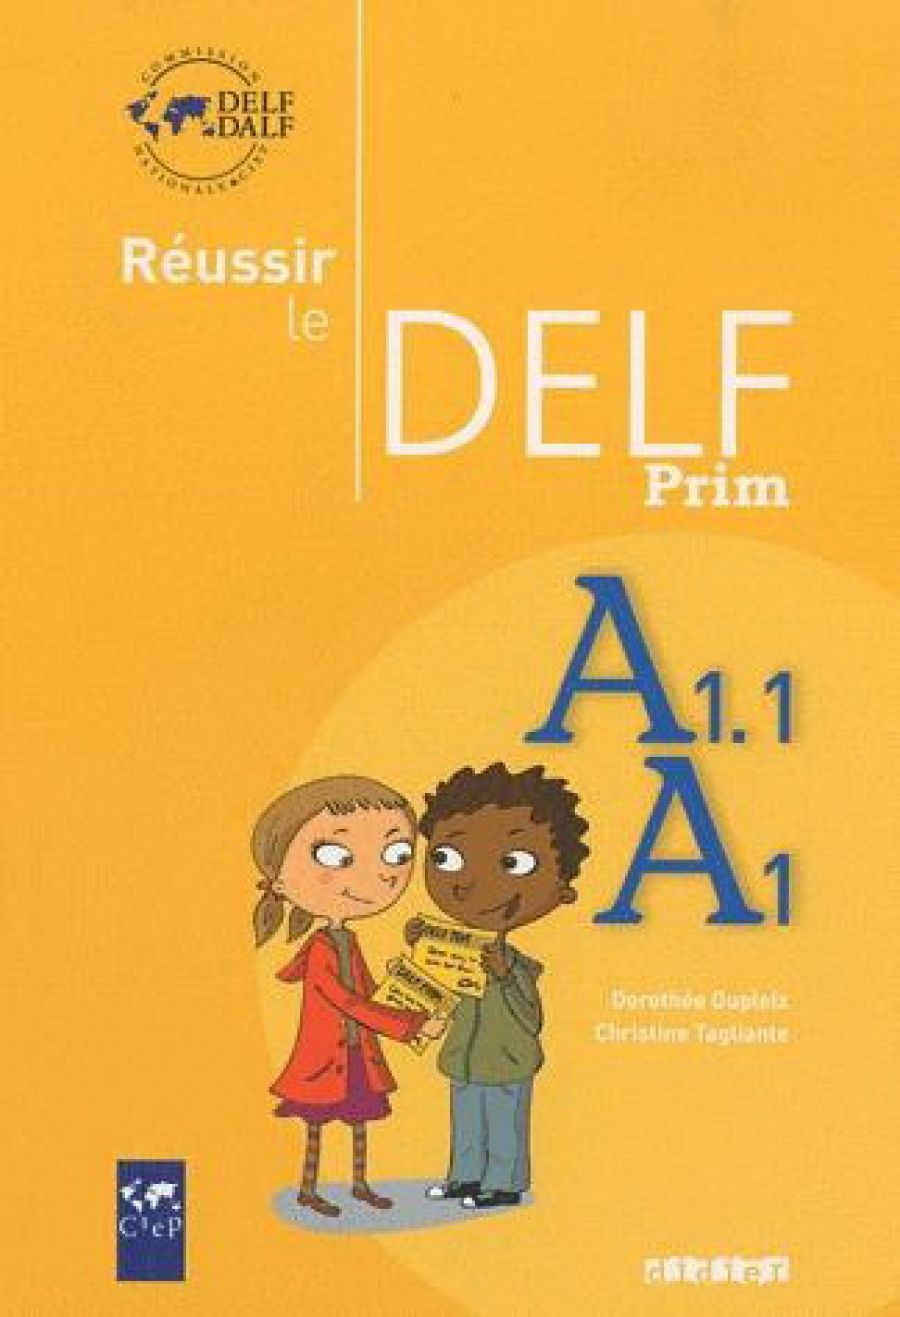 Dupleix, D., Tagliante, C. Reussir le DELF prim' A1 - A1.1 Livre 